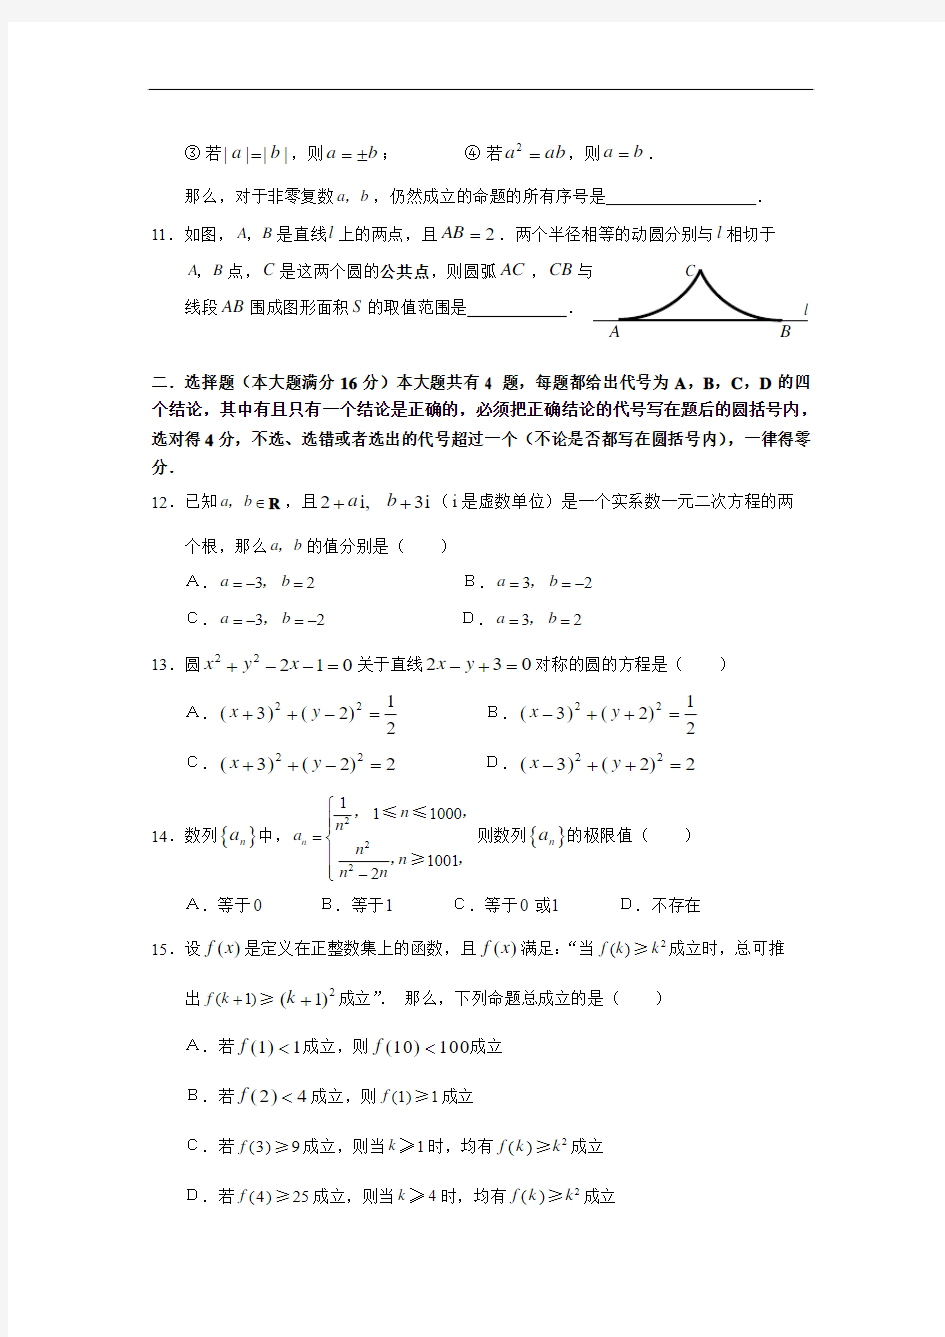 2007年高考上海数学文科卷试题及答案